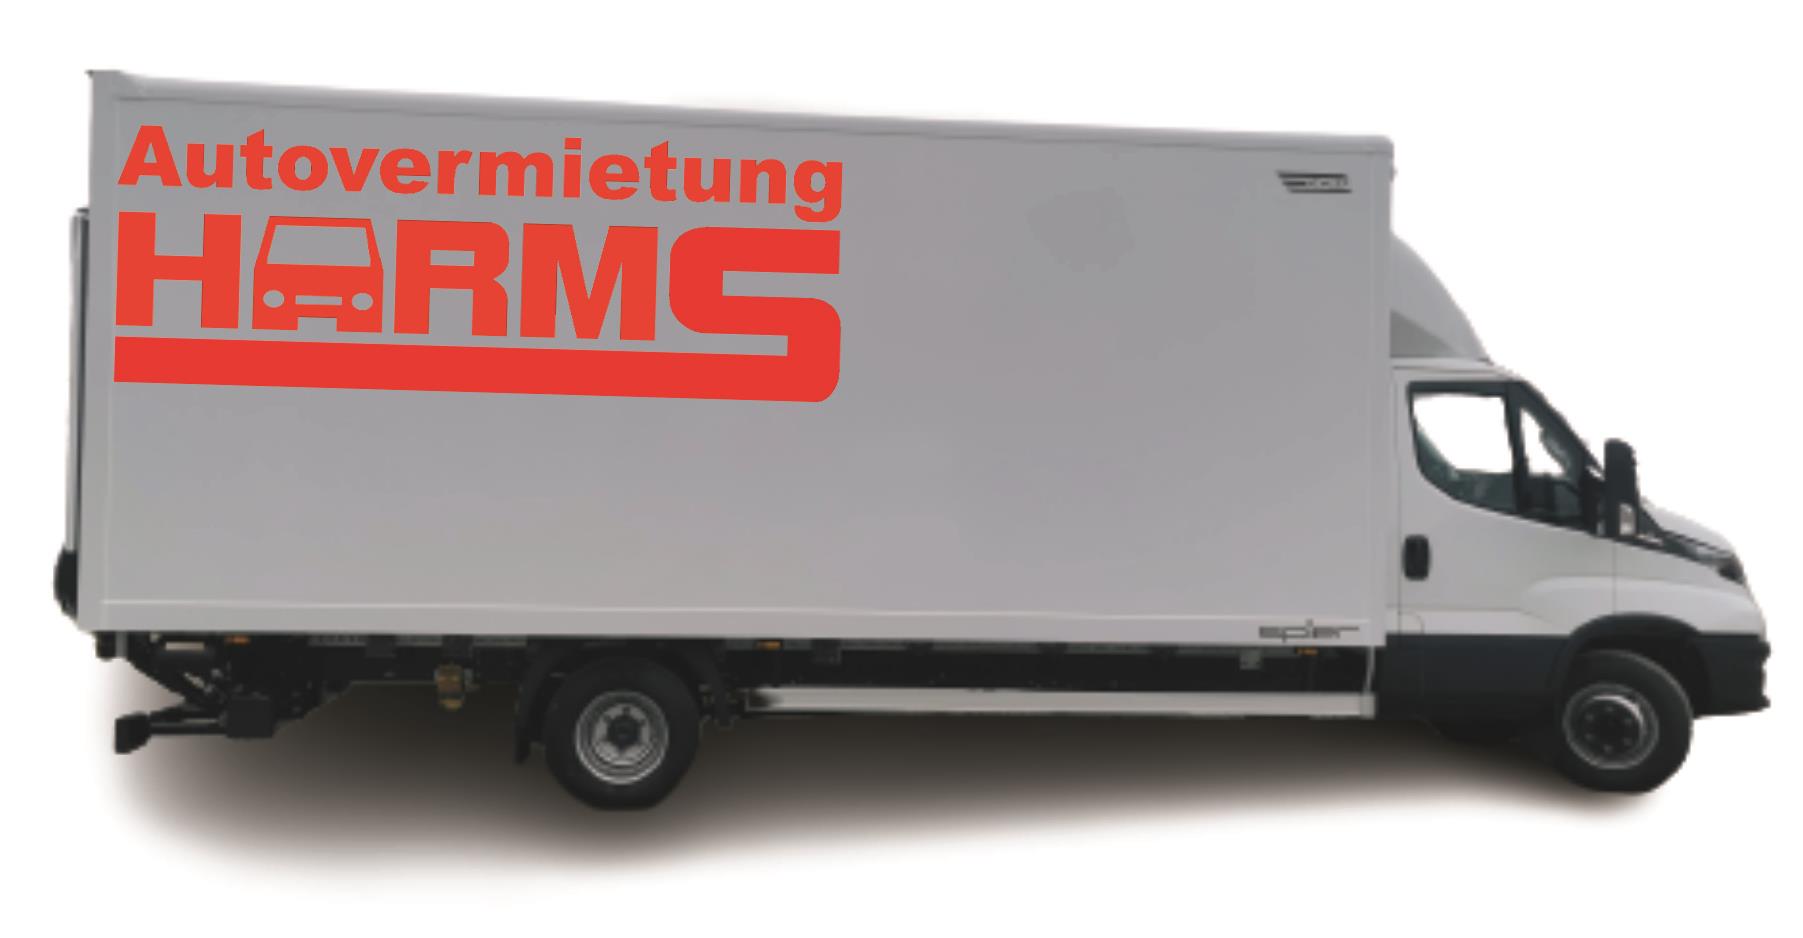 7,2 t LKW mit Kofferaufbau mieten bei der Autovermietung Harms